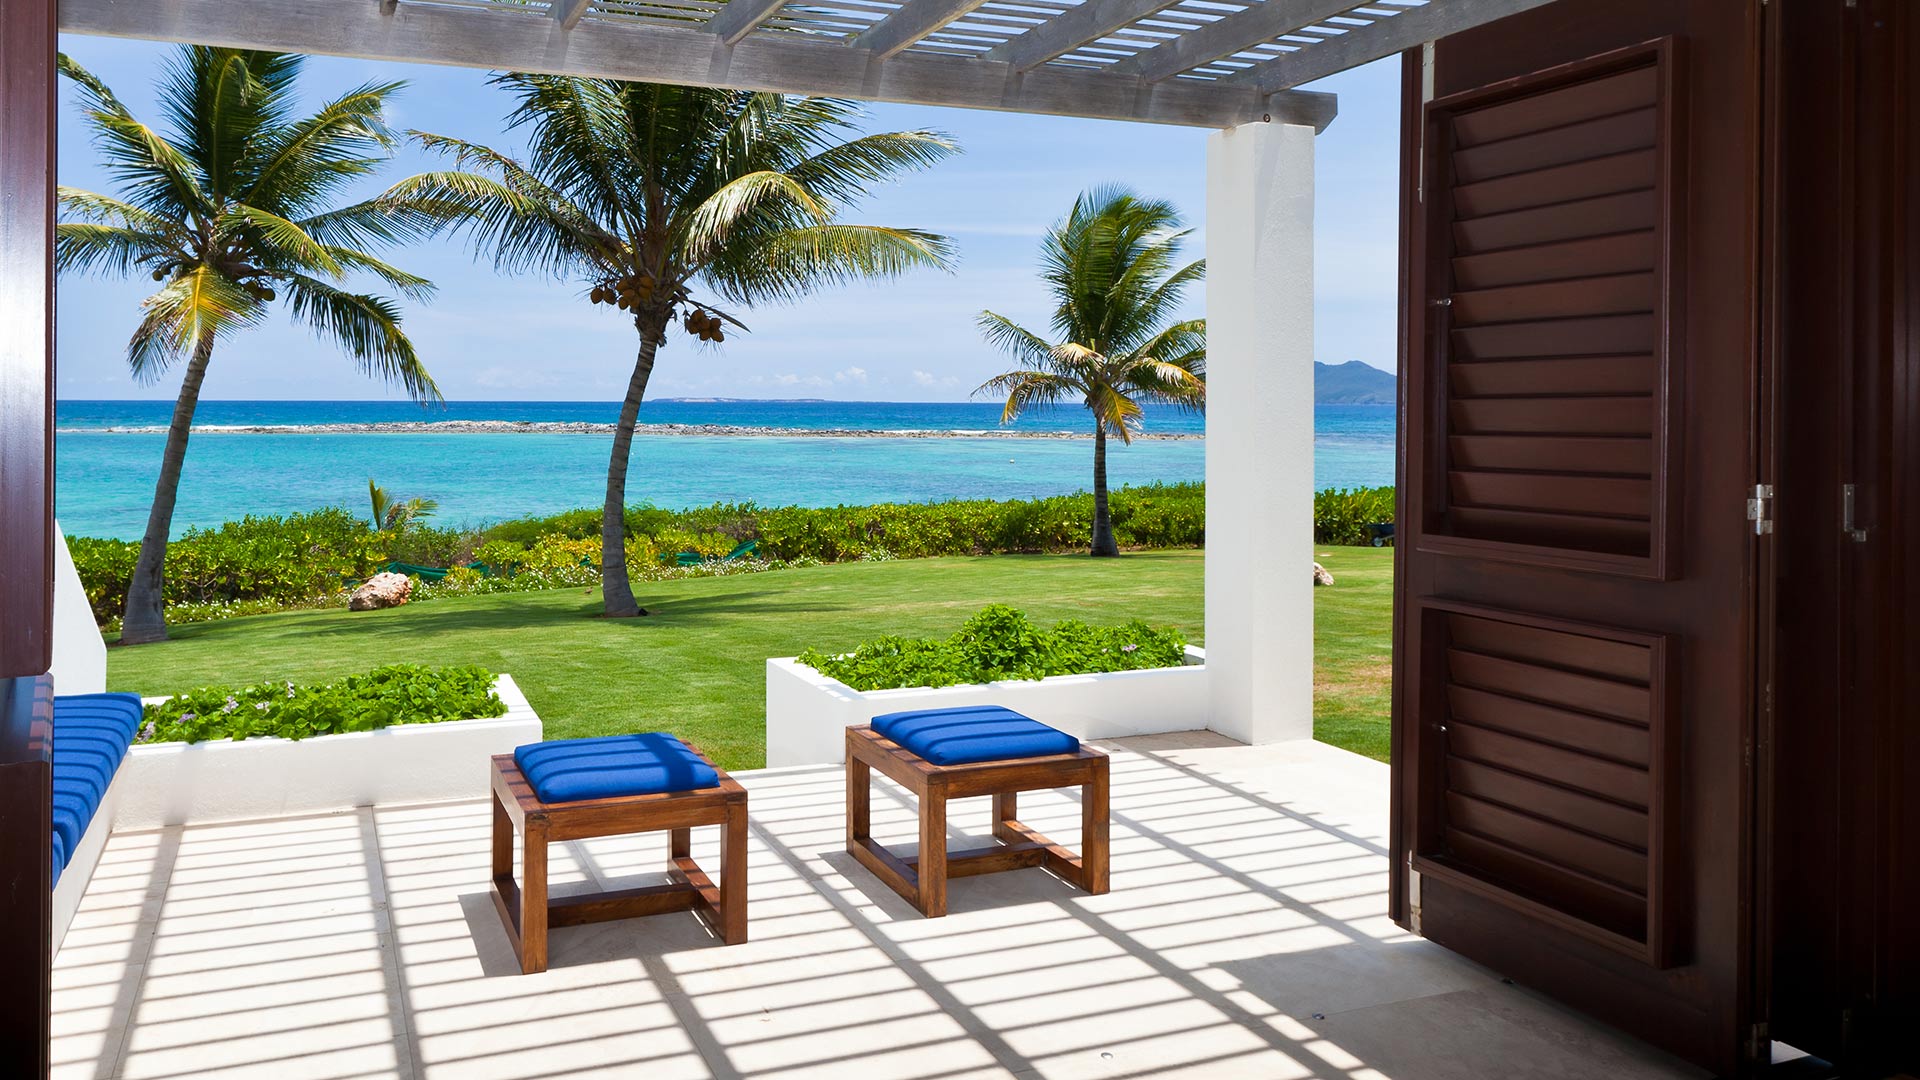 LeBleu-Villa-Anguilla-Rental-Caribbean-terrace-view